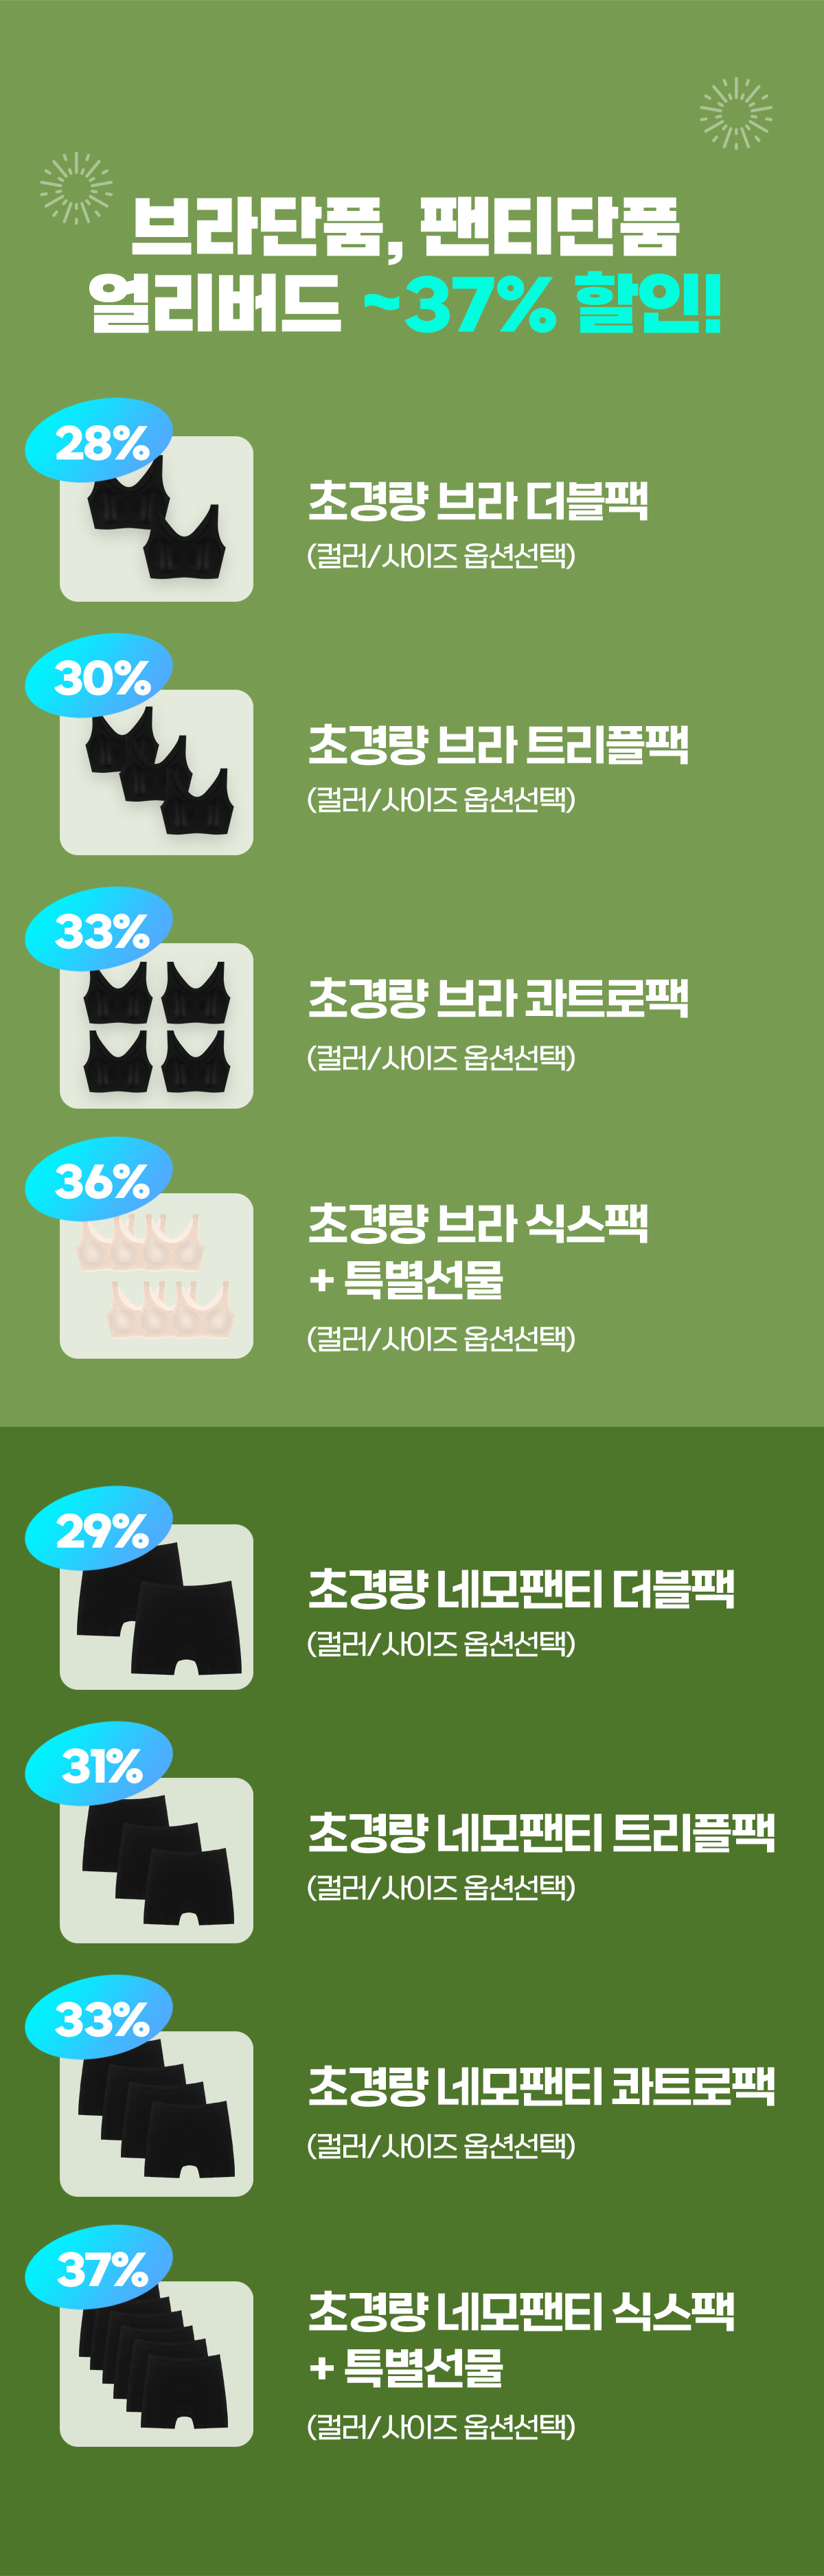 브라단품, 팬티단품 얼리버드 ~37% 할인!